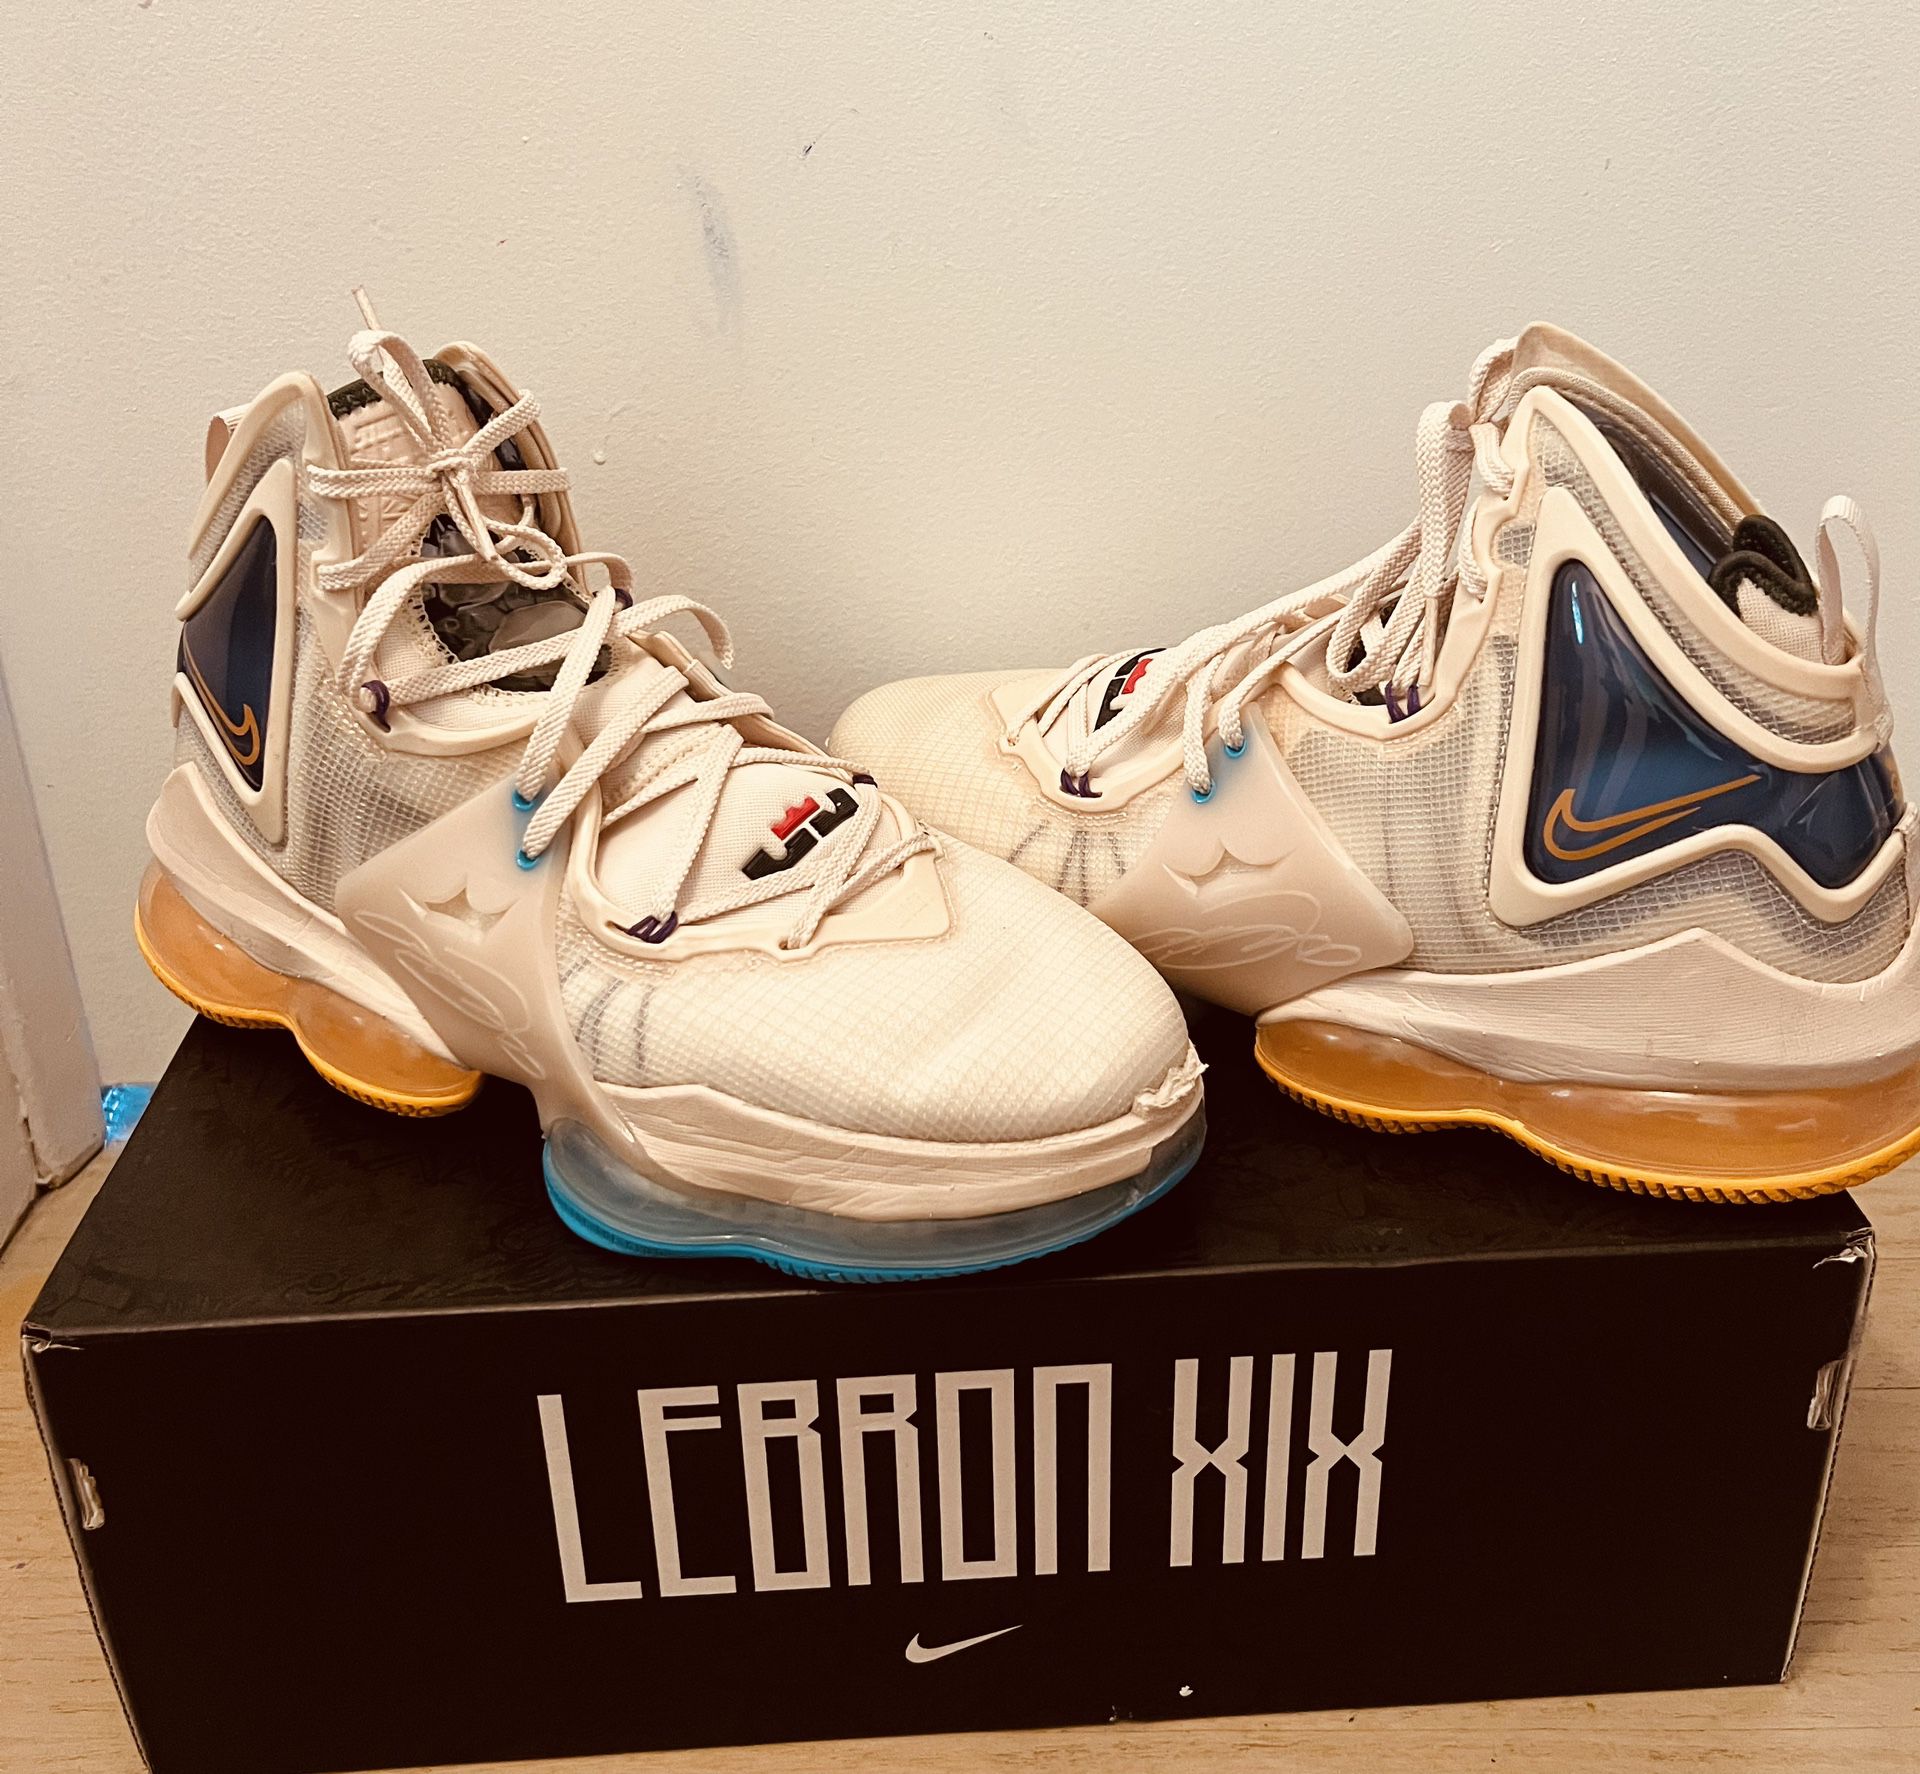 Lebron Shoes